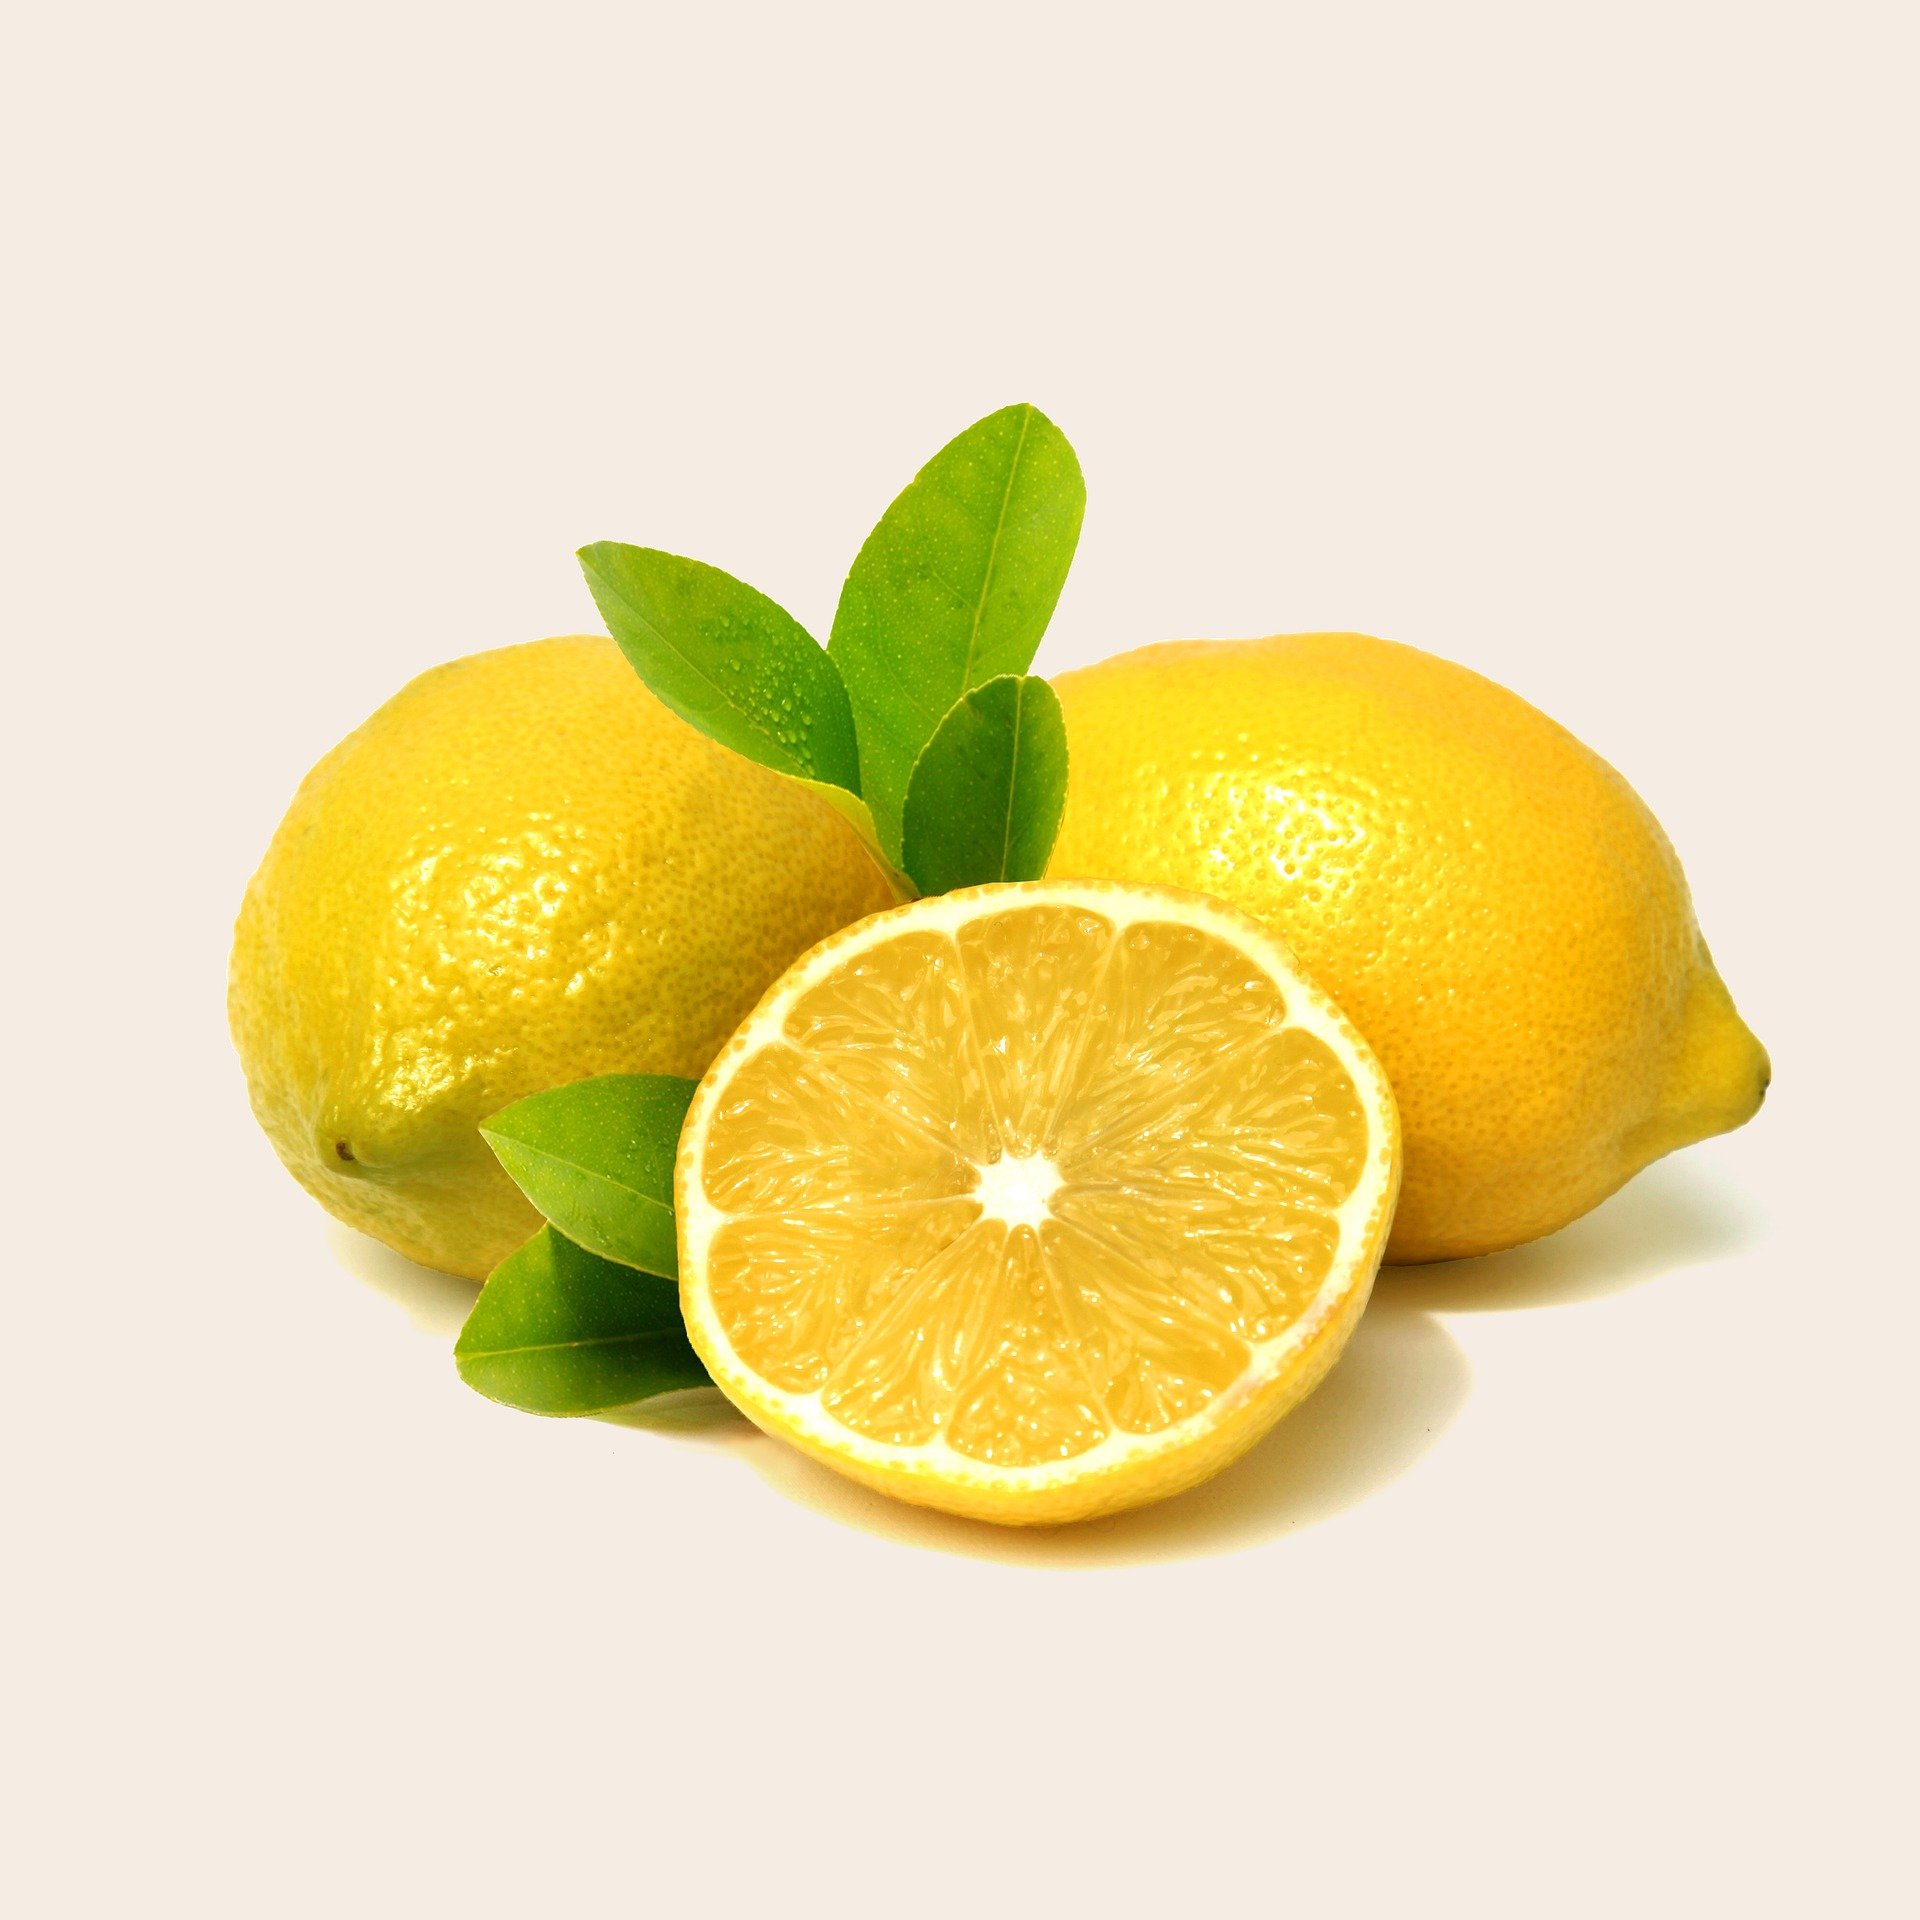 Cuando la vida te da limones...